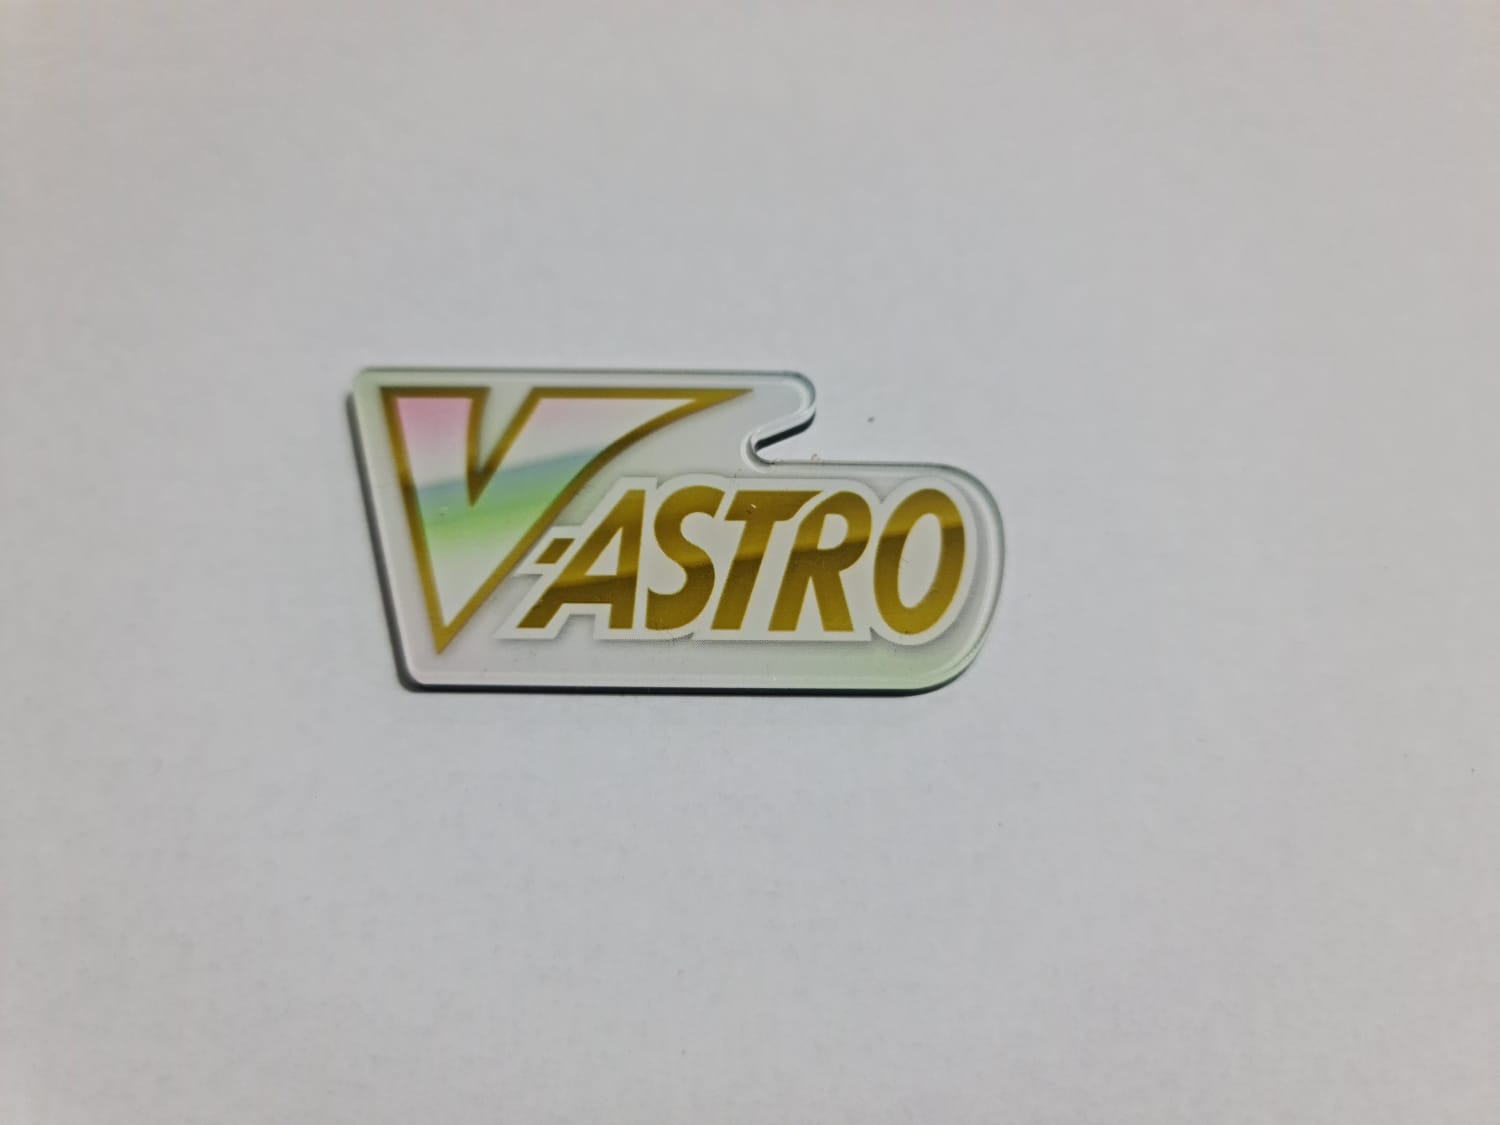 Marcado V-Astro